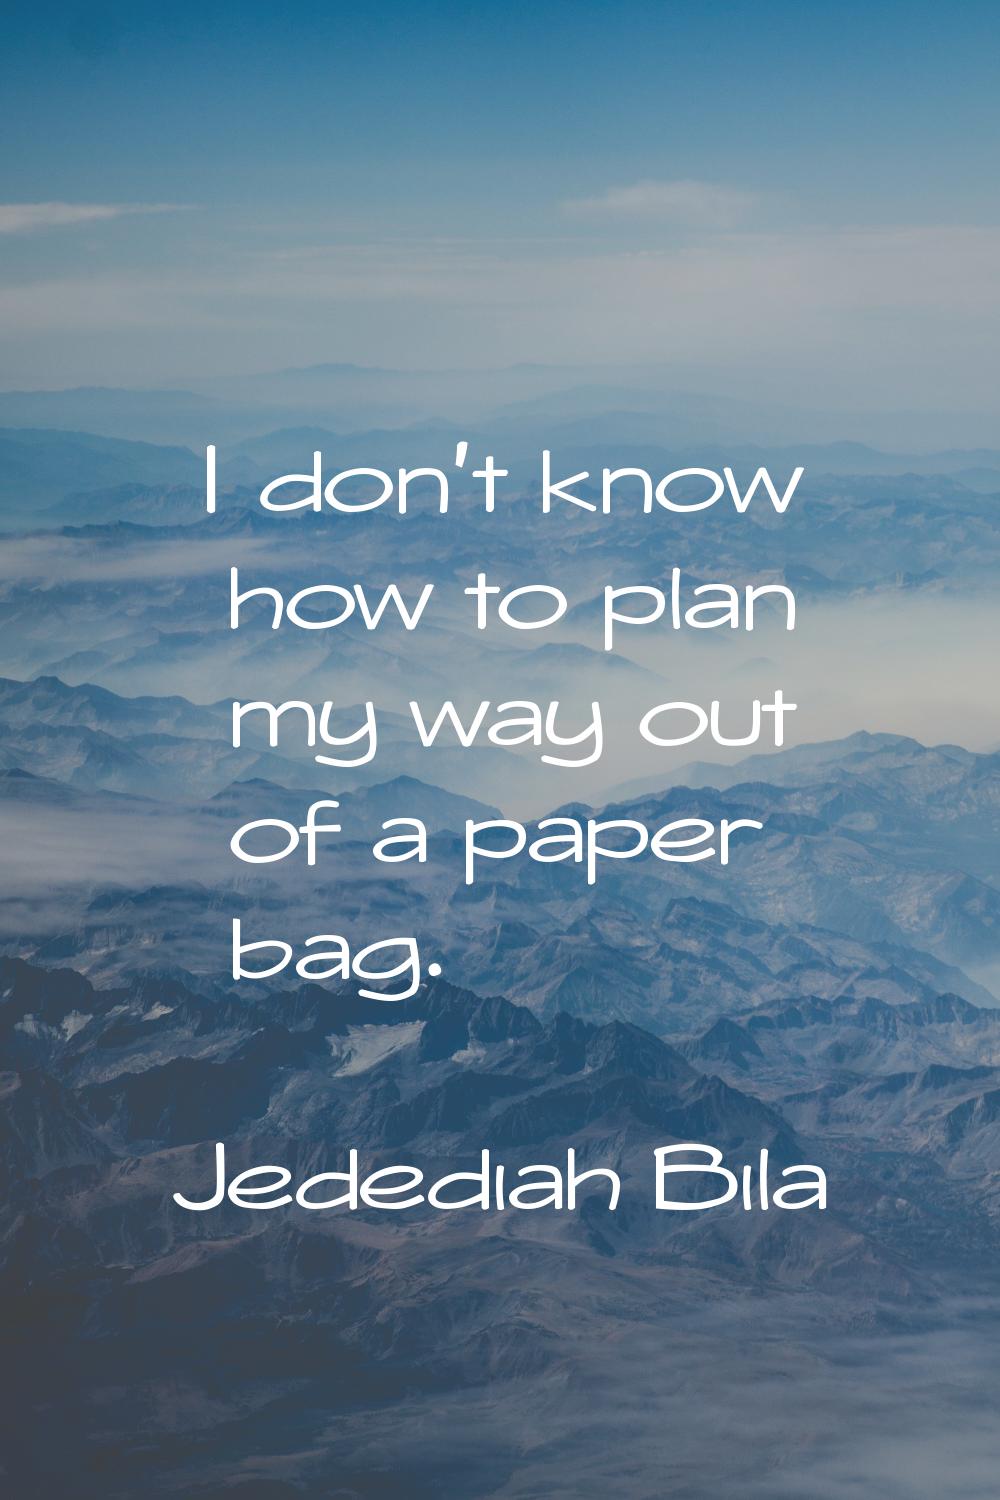 I don't know how to plan my way out of a paper bag.